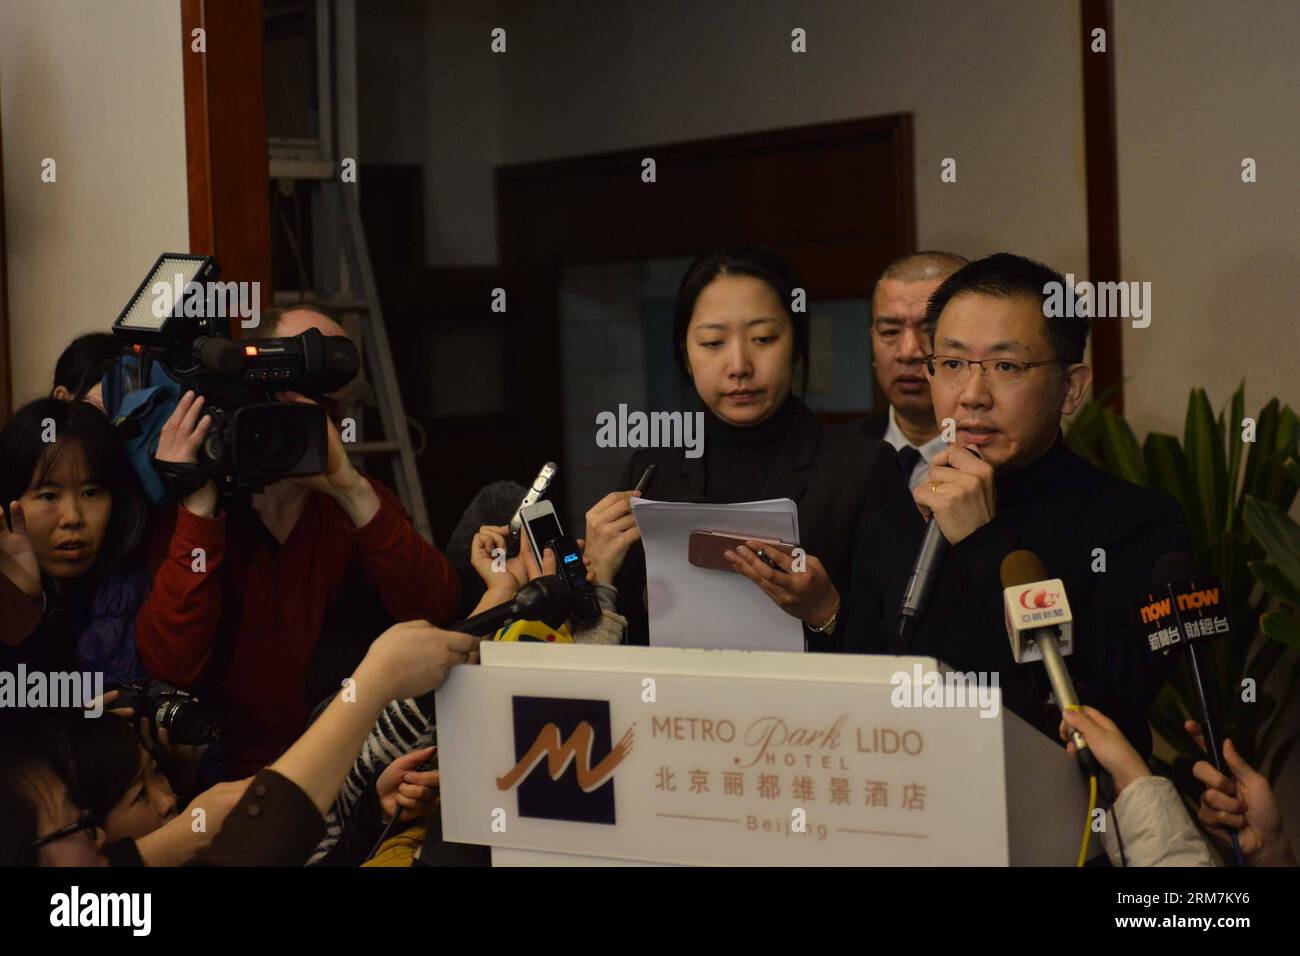 Joshua Law Kok Hwa (R), vicepresidente senior regionale della Malaysia Airlines in Cina, parla in una conferenza stampa al Metro Park Lido Hotel di Pechino, capitale della Cina, 8 marzo 2014. Un aereo passeggeri malese che trasportava 239 persone ha perso il contatto con il controllo del traffico aereo di sabato mattina presto, mentre era in viaggio dalla capitale malese Kuala Lumpur a Pechino. Un totale di 154 cittadini cinesi erano a bordo dell'aereo, tra cui un neonato e uno da Taiwan. (Xinhua/Wang Quanchao) (ry) CINA-PECHINO-MALESIA VOLO-MANCANTE-CONFERENZA STAMPA (CN) PUBLICATIONxNOTxINxCHN legge di Joshua Foto Stock